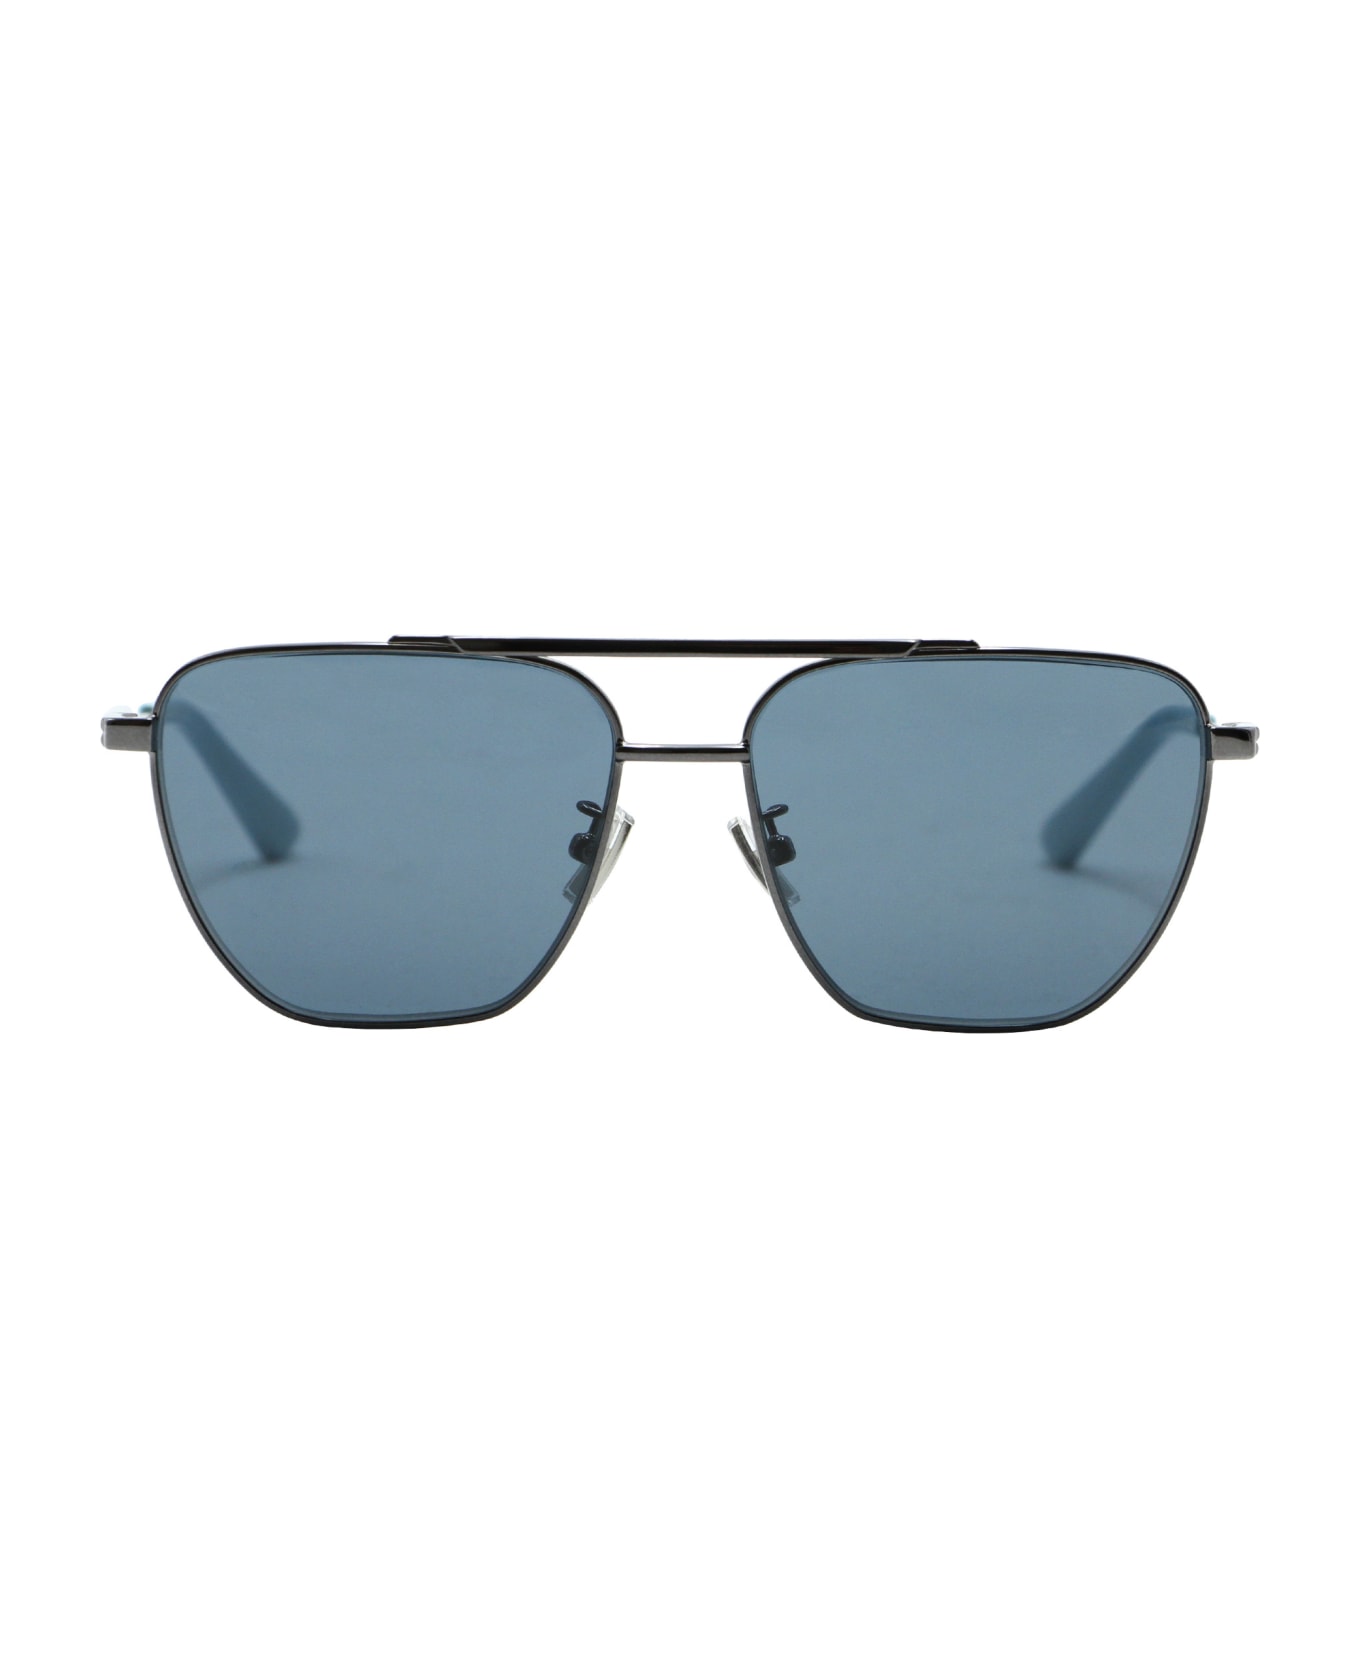 Bottega Veneta Sunglasses - blue